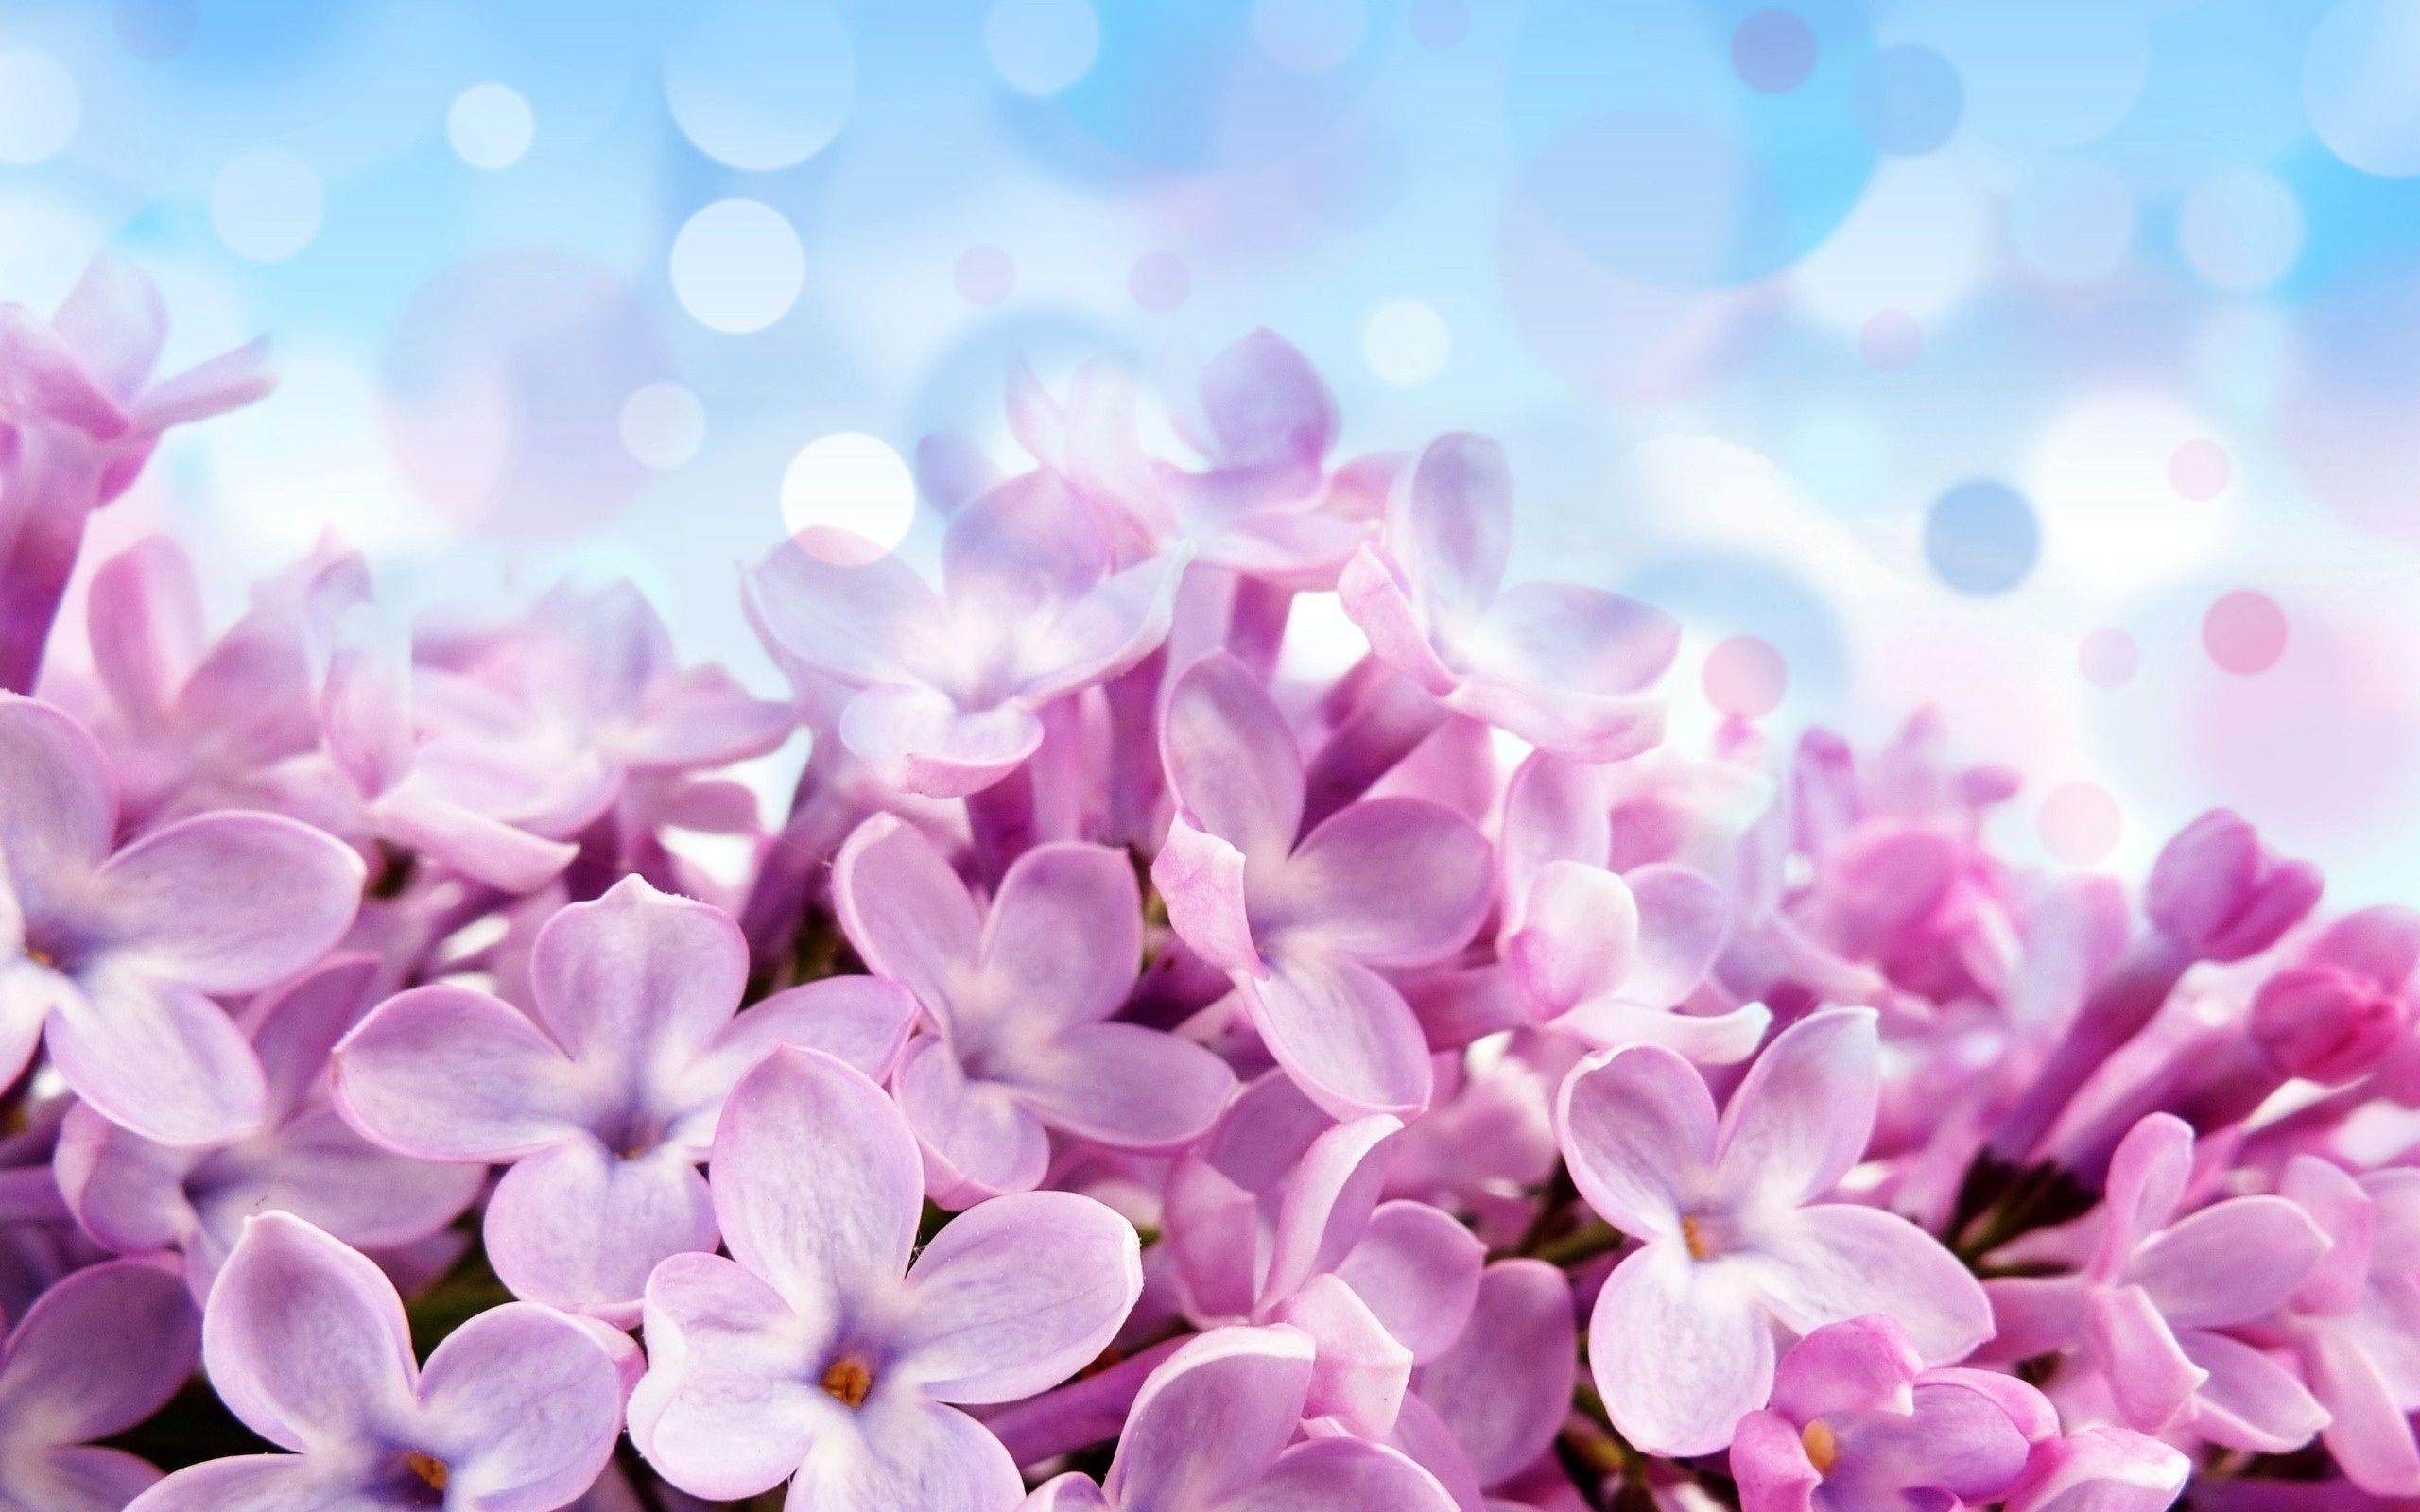 Lilac Flower Wallpaper HD. Wallpaper. Free flower